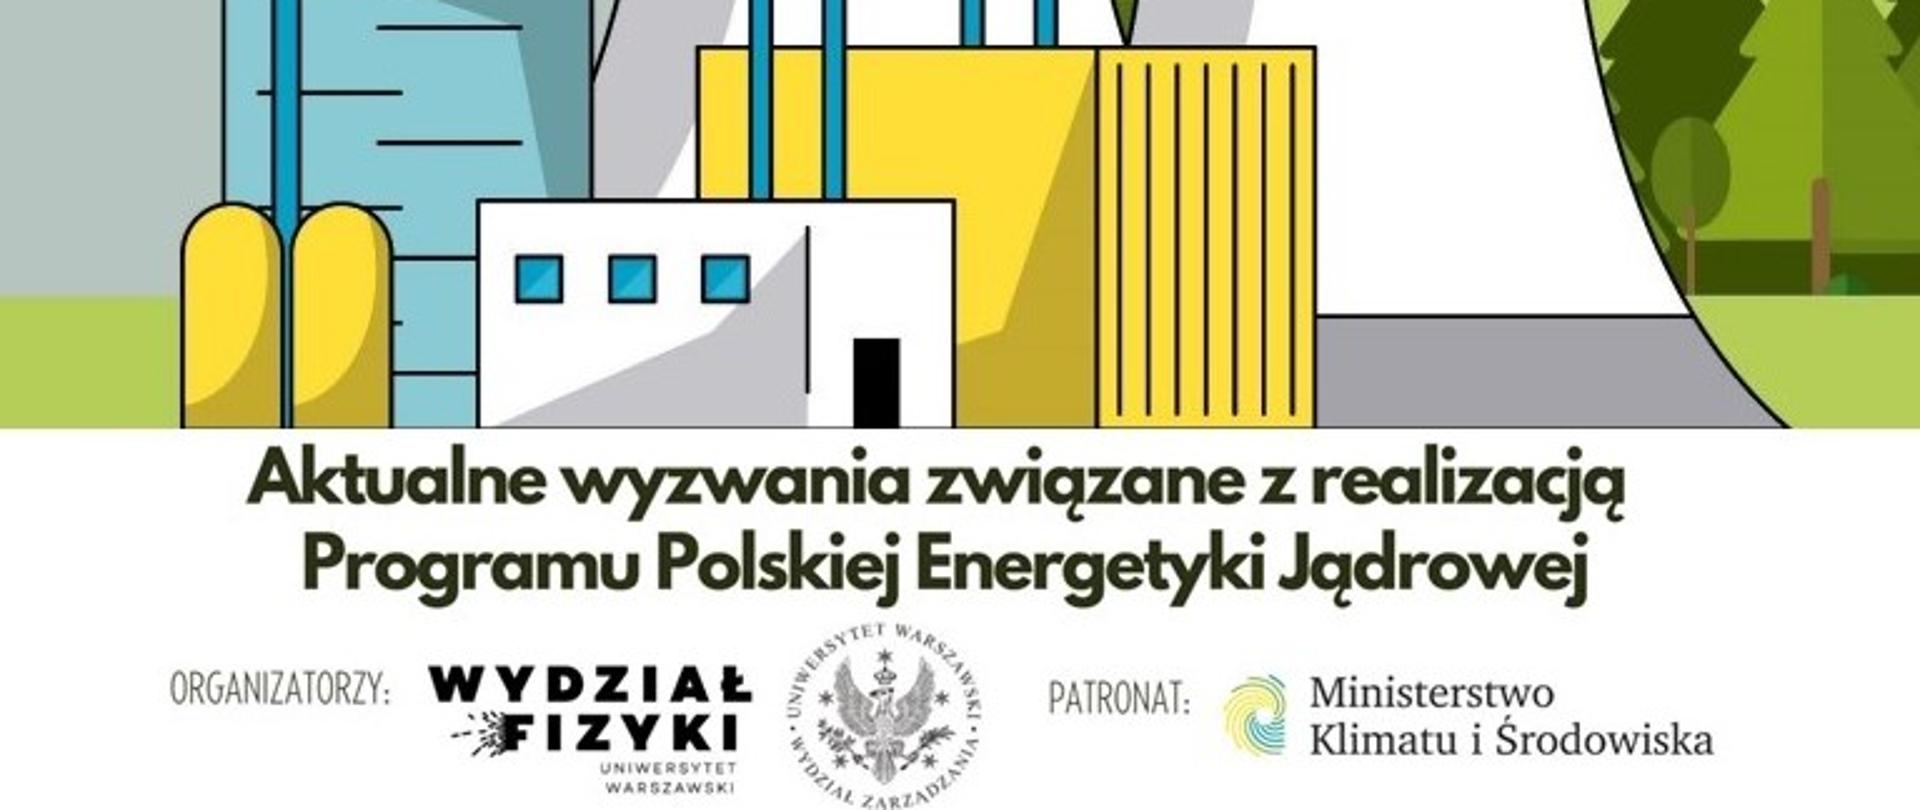 Na białym tle czarny napis "Aktualne wyzwania związane z realizacją Programu polskiej energetyki jądrowej". Nad napisem rysunek elektrowni jądrowej. Niebieski budynek reaktora. Obok niego stoją żółty i biały budynek. W tle zielony las.